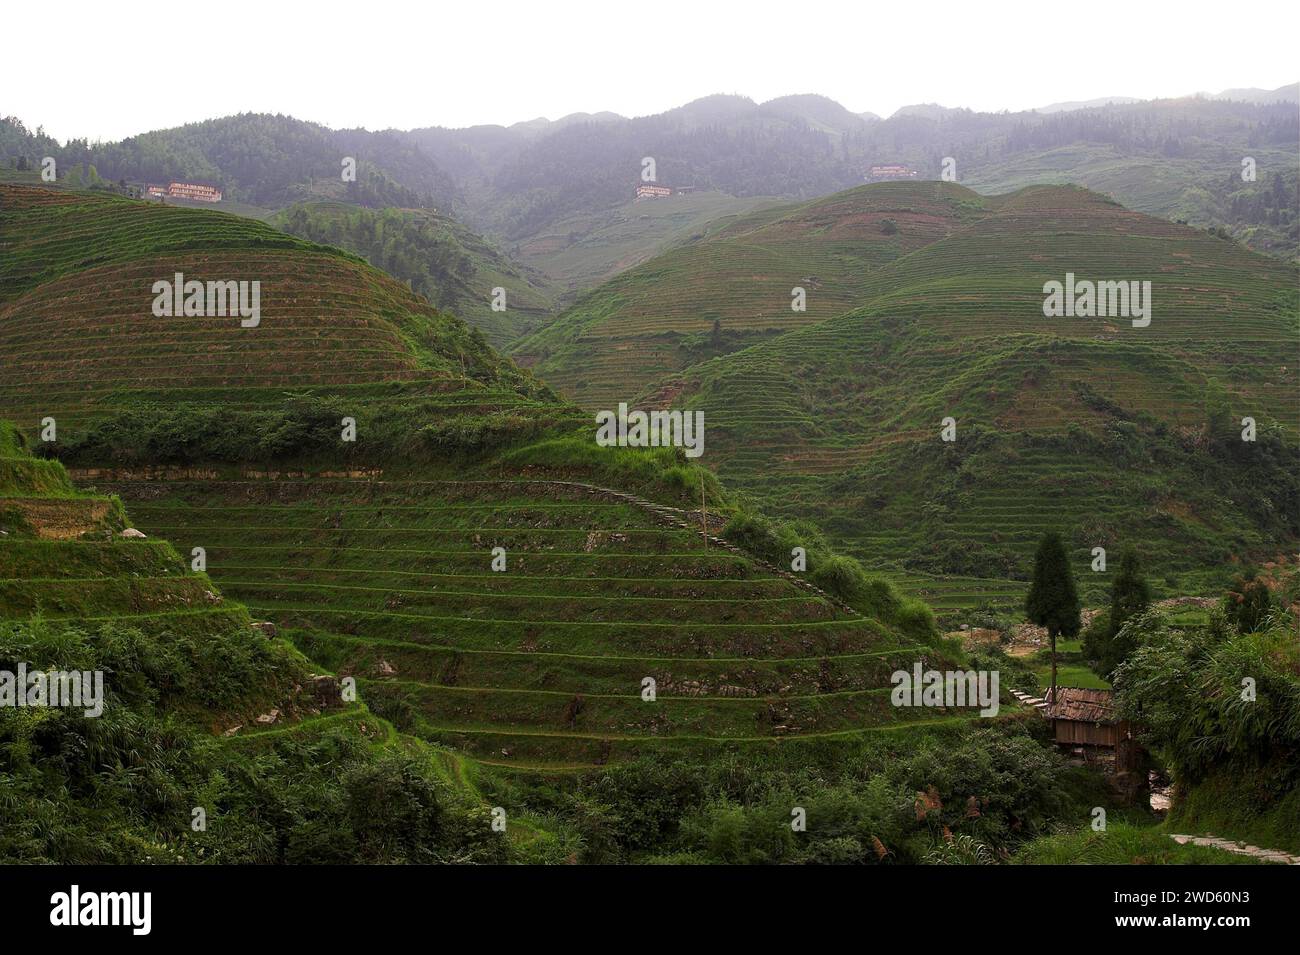 龙胜镇 (龙胜县) 中國 Longsheng Reisterrassen, Dazhai Longji Ping'an Zhuang, China; malerische Reisterrassen auf den Hügeln Stockfoto